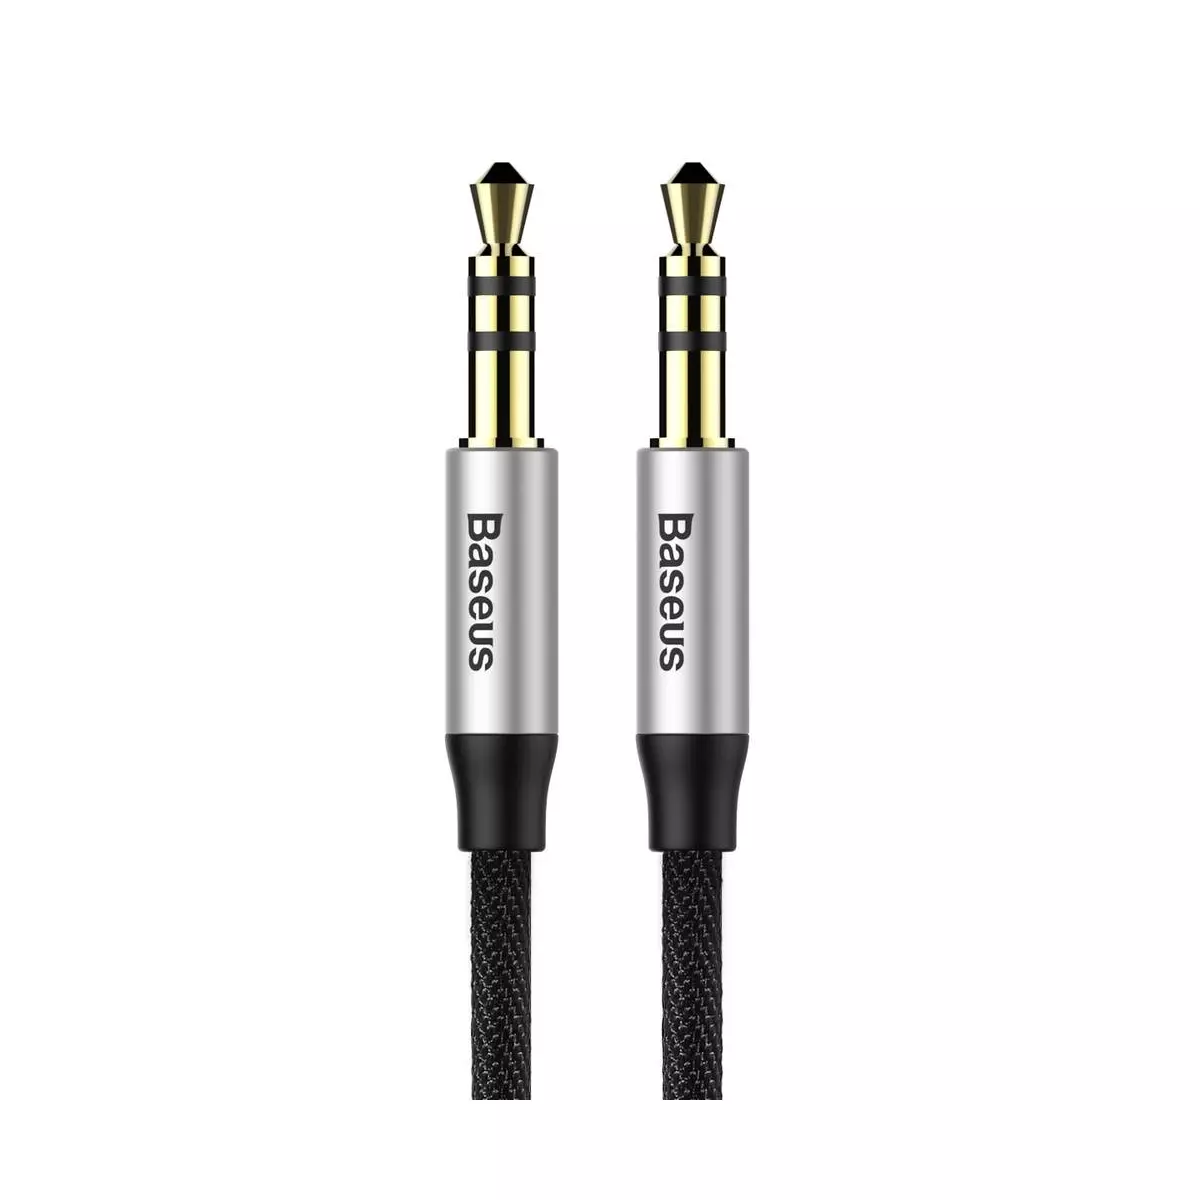 Kép 2/9 - Baseus Audio kábel, Yiven M30 AUX 1.5m, ezüst/fekete (CAM30-CS1)